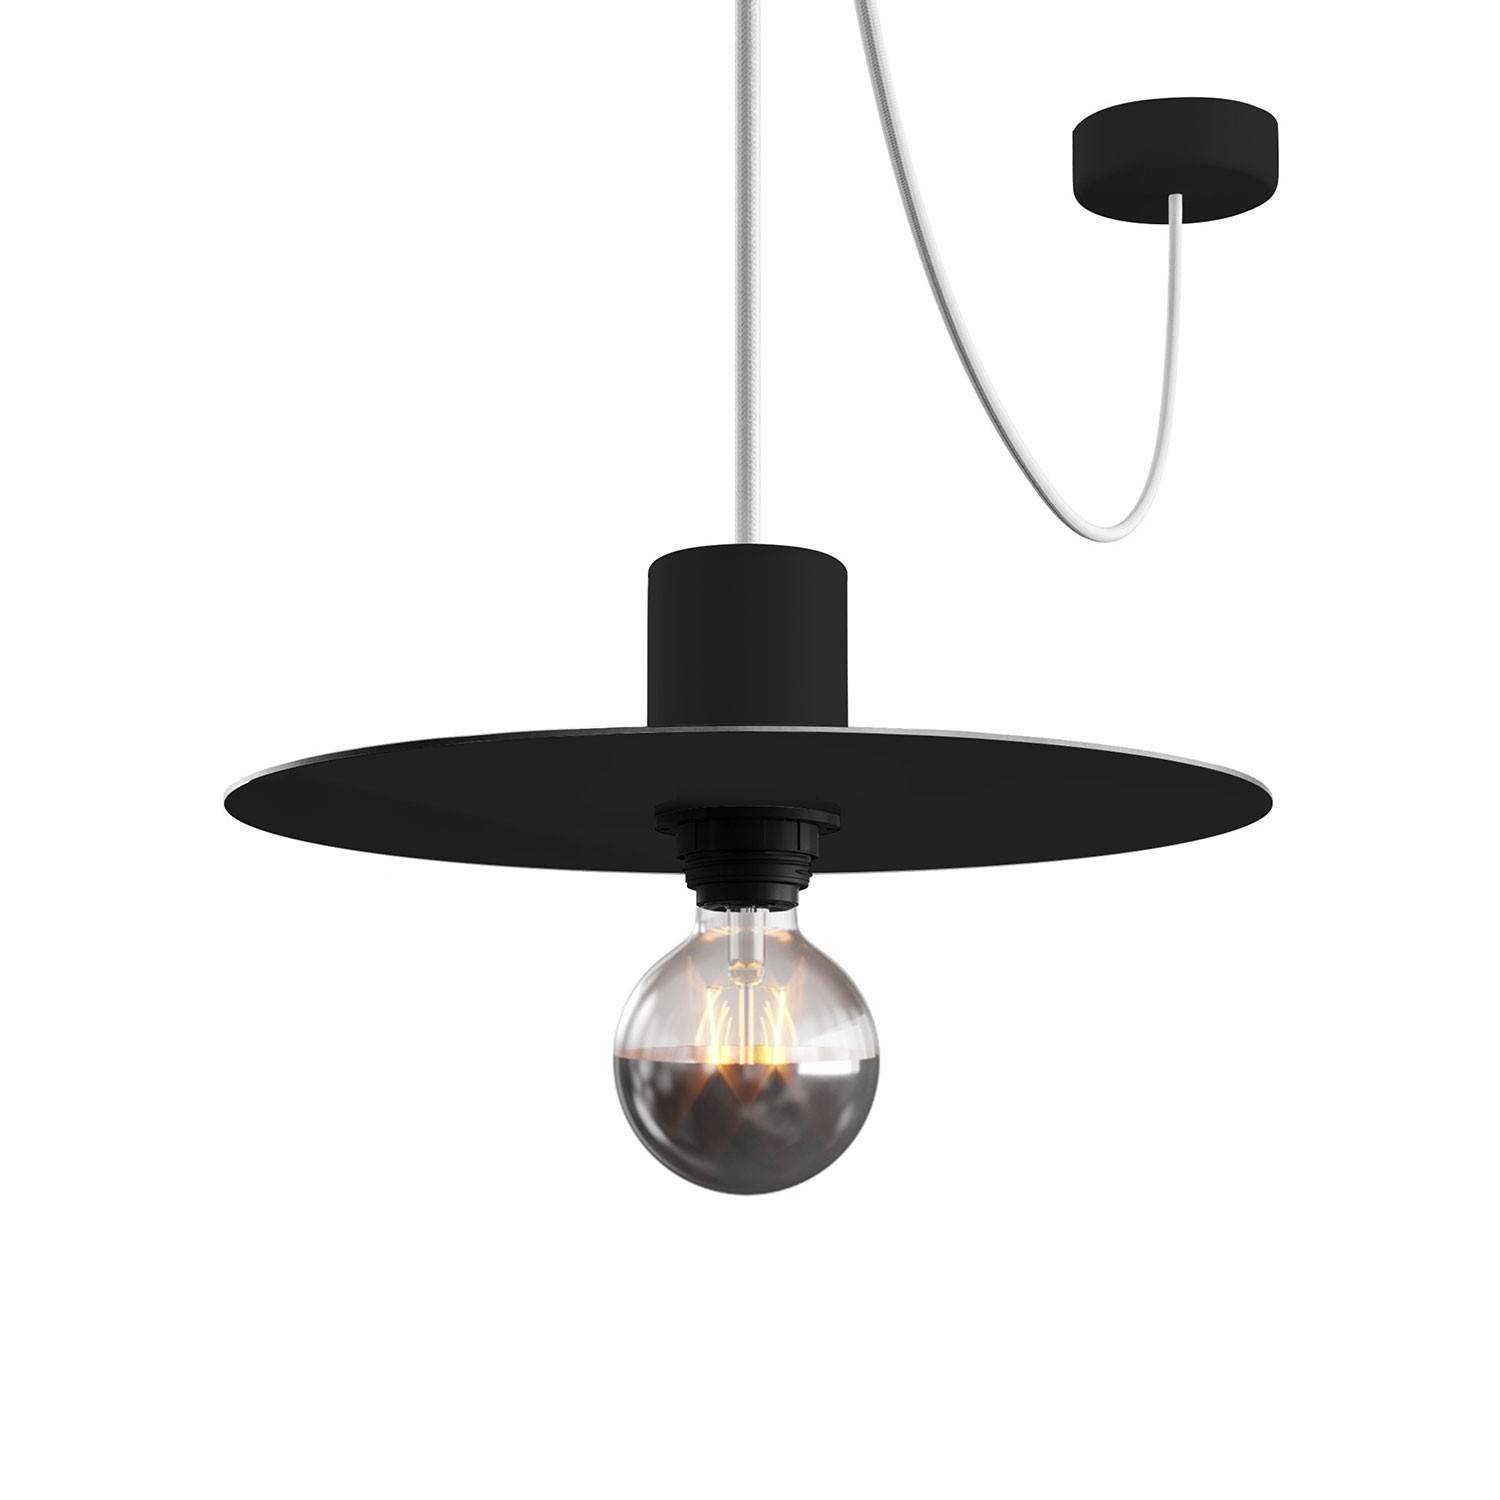 Miniplaca Ellepì 'Solid Color' para lámparas de suspensión, aplique y catenaria, diámetro 24 cm - Made in Italy